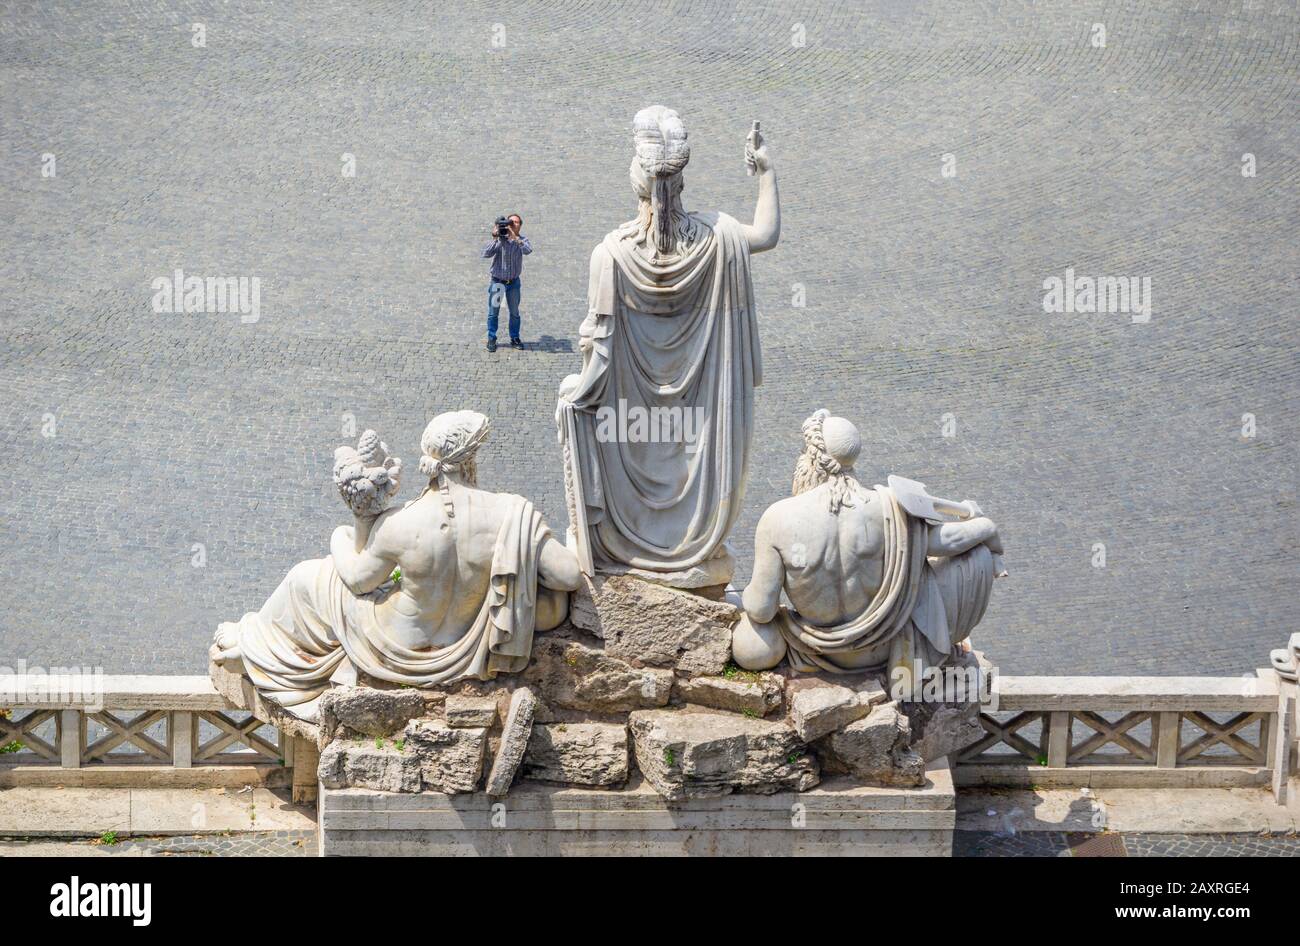 Sculptures on the Piazza del Populo in Rome, Lazio, Italy Stock Photo